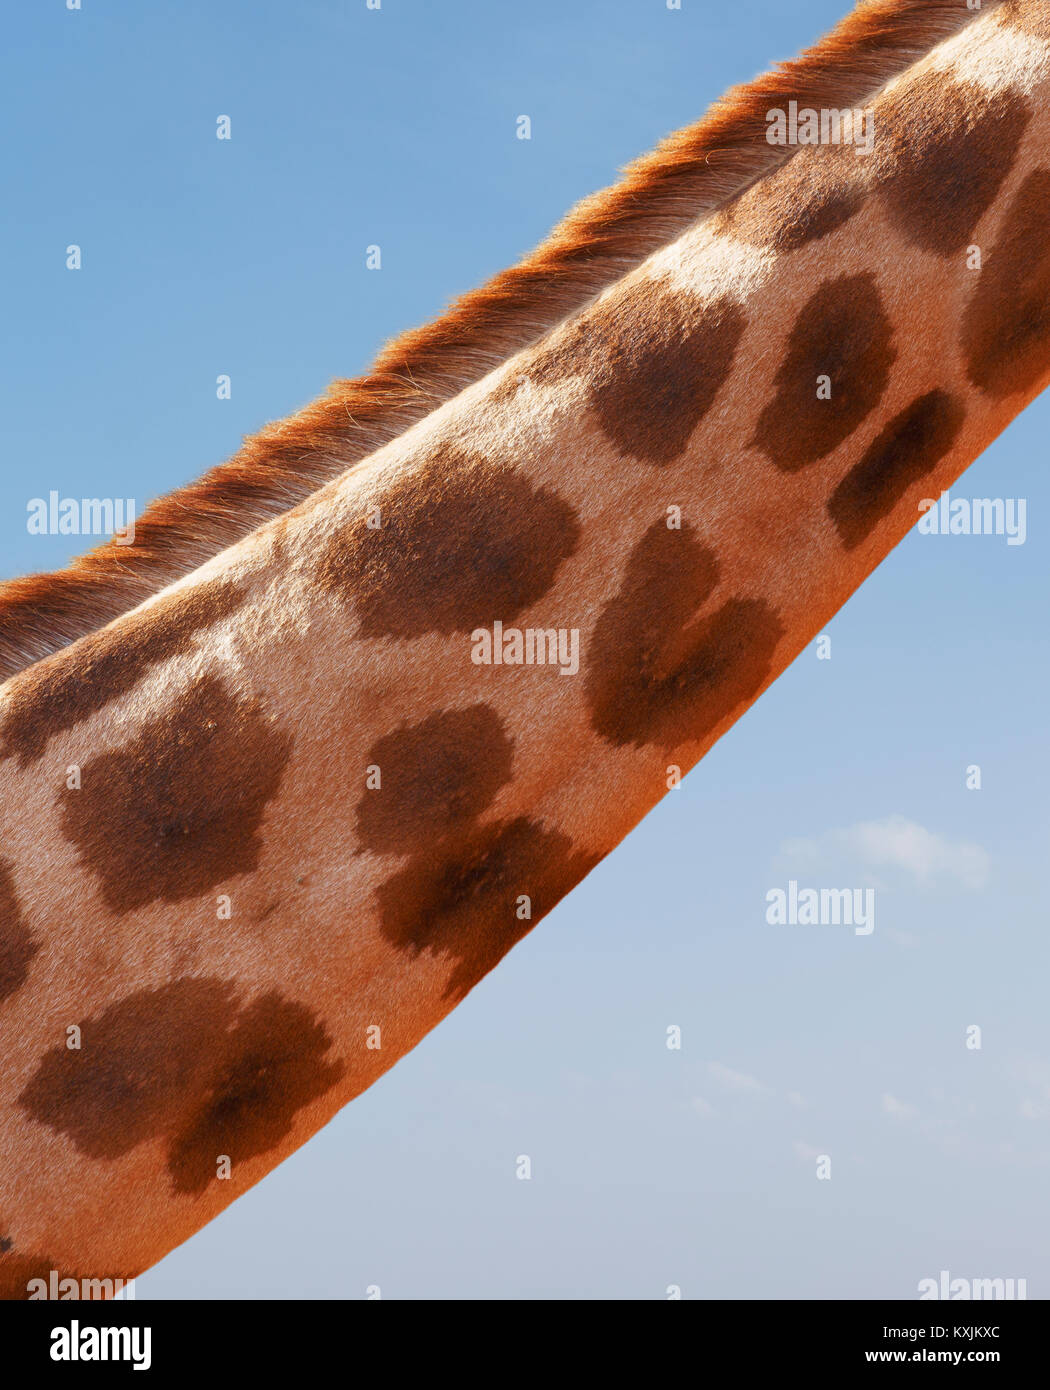 Cropped view of giraffe neck, Nairobi National Park, Nairobi, Kenya, Africa Stock Photo